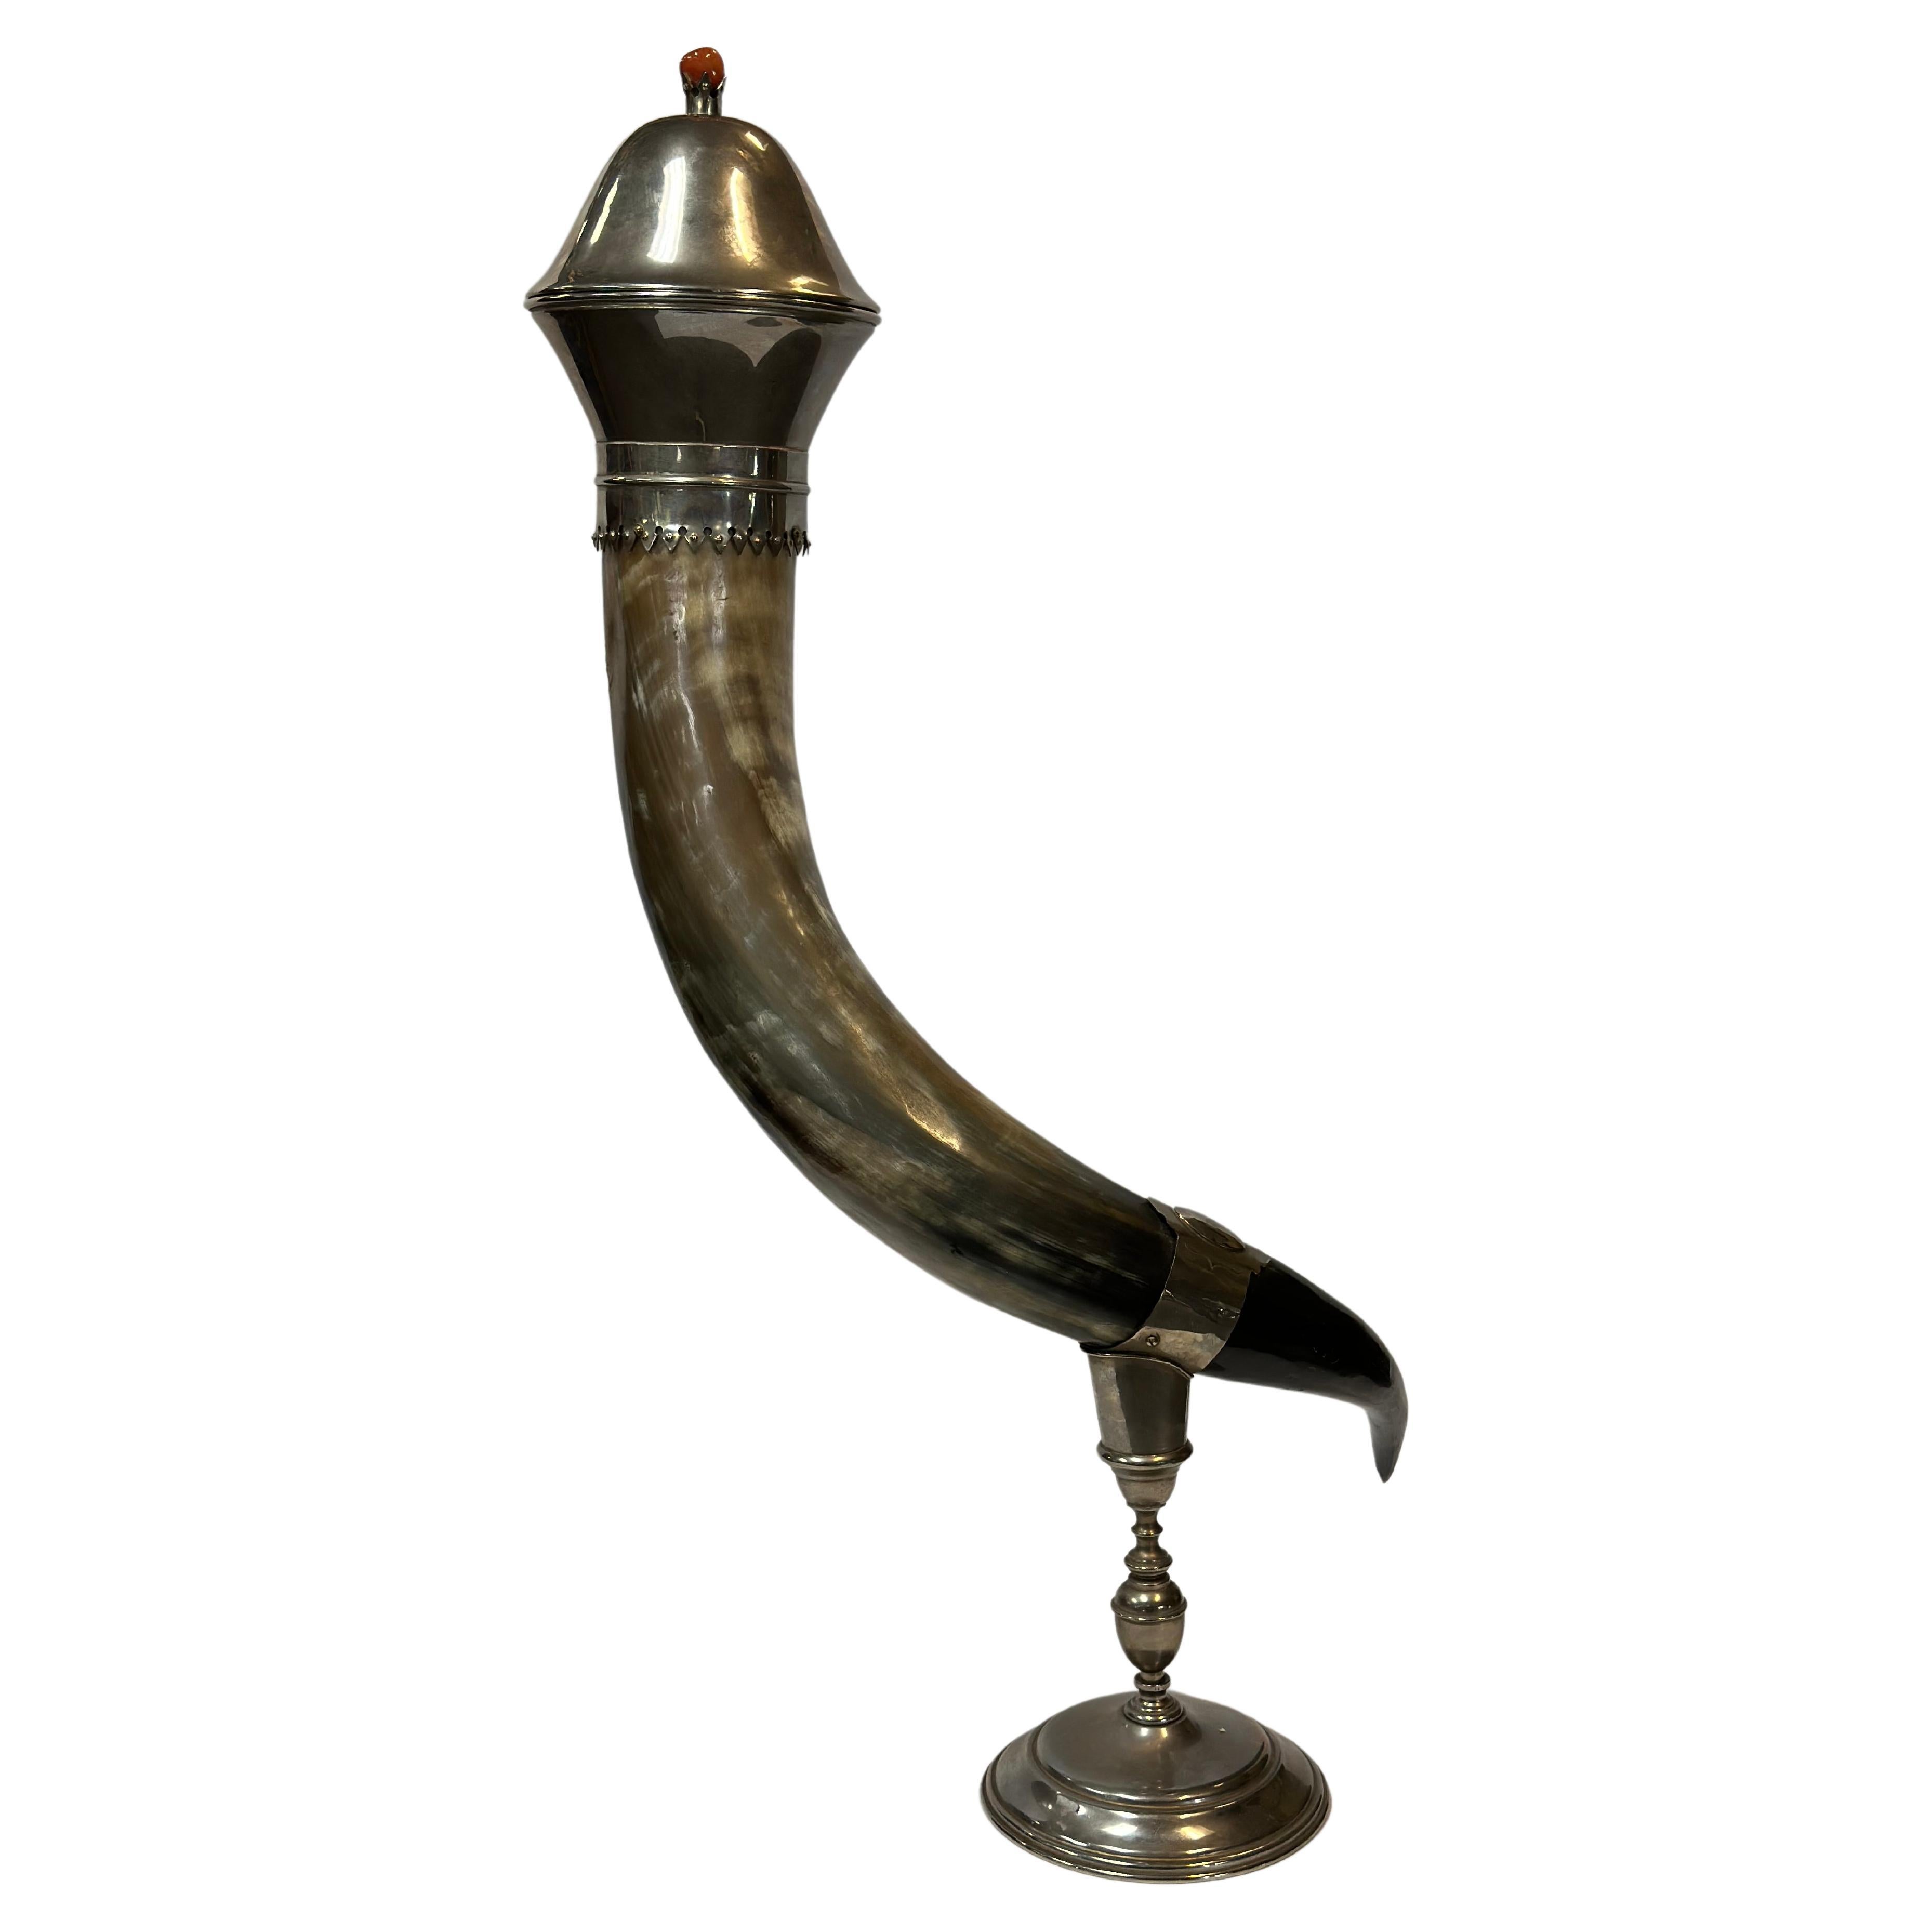 Silberne Pedestal Horn Vase um 1860